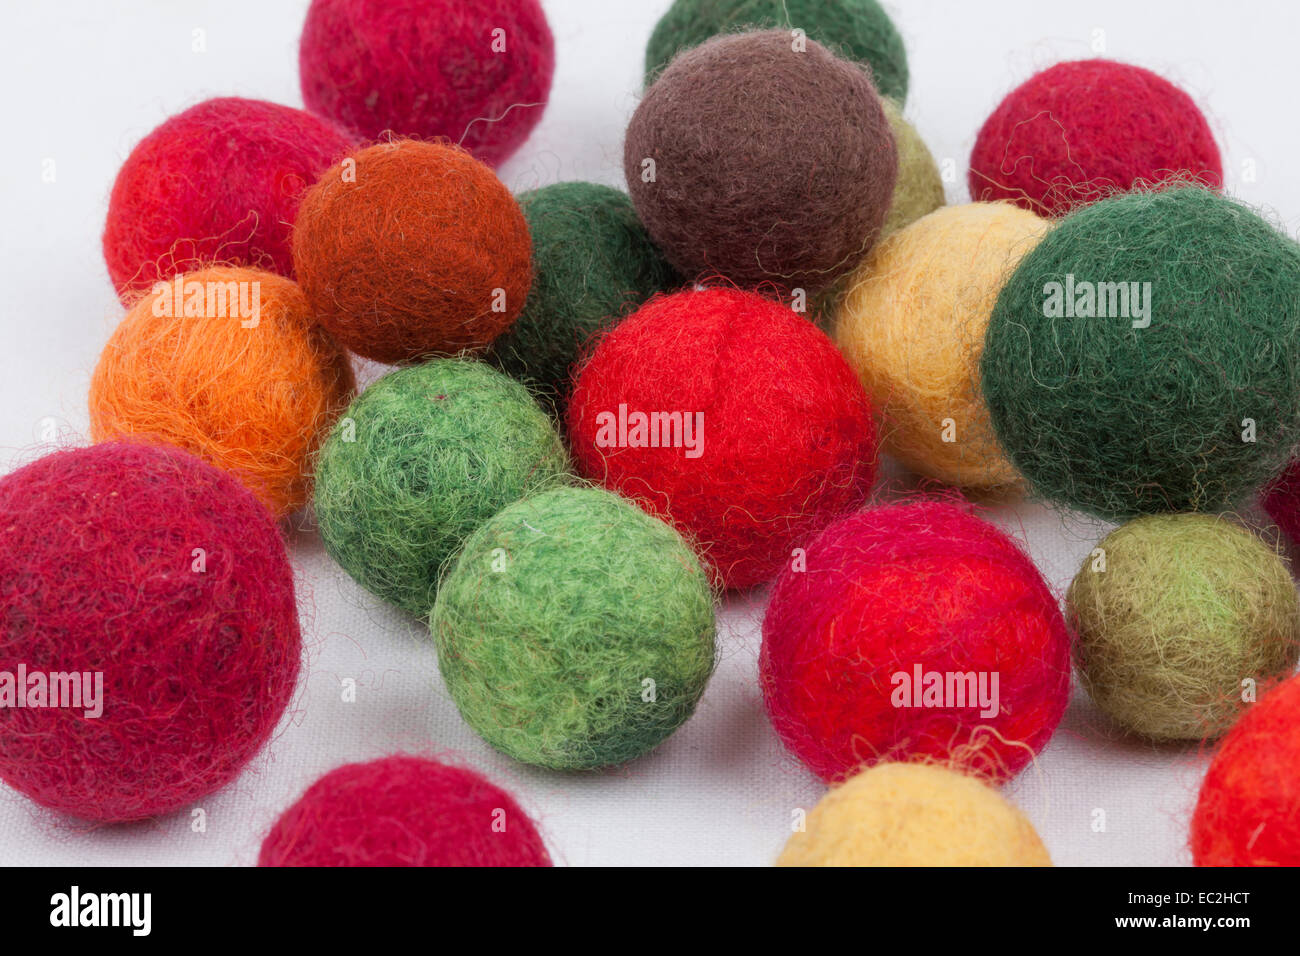 Multi-colored cotton balls Stock Photo